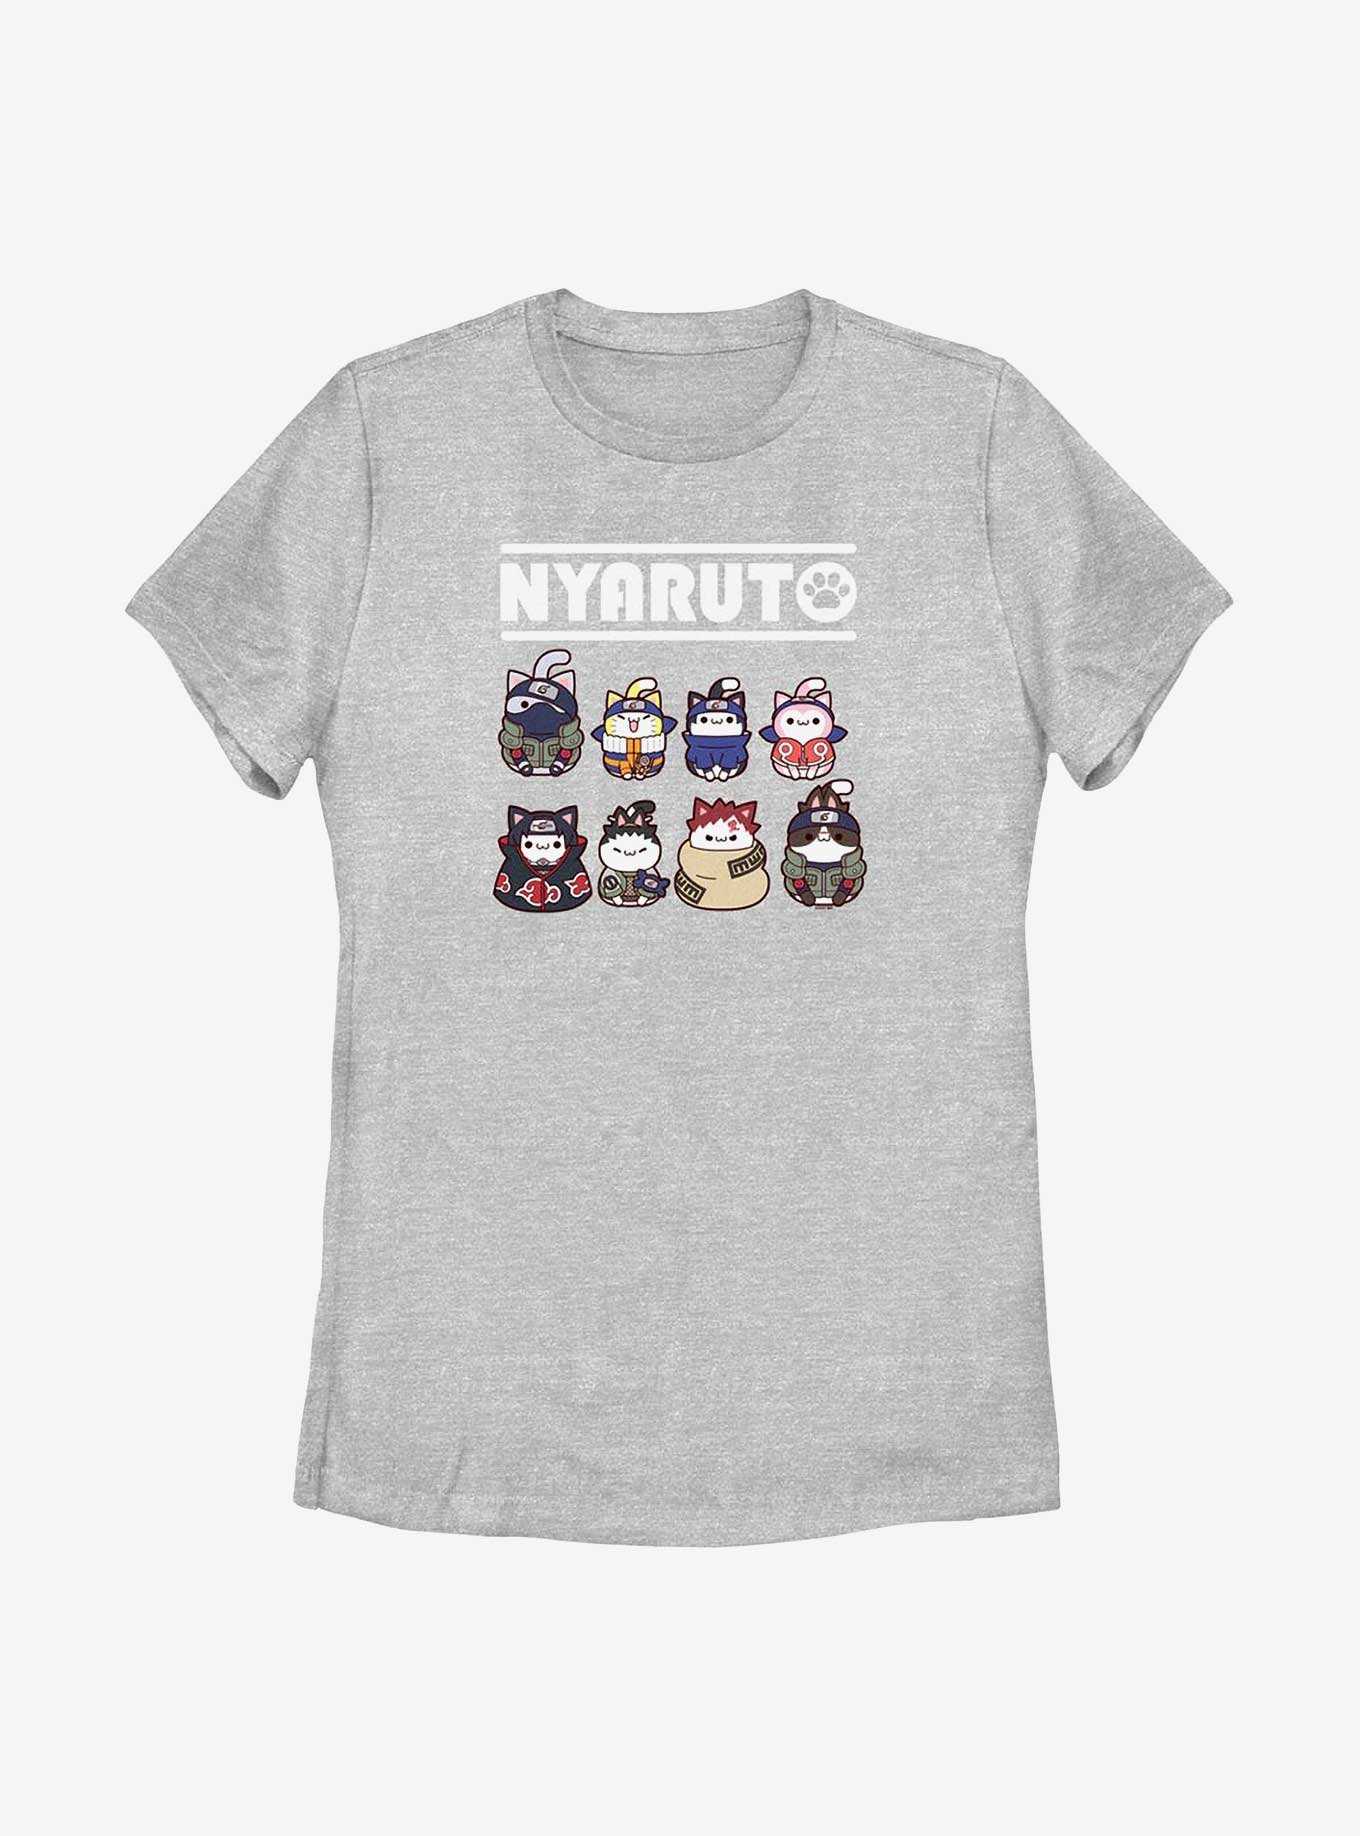 Naruto Nyaruto Cat Lineup Womens T-Shirt, , hi-res